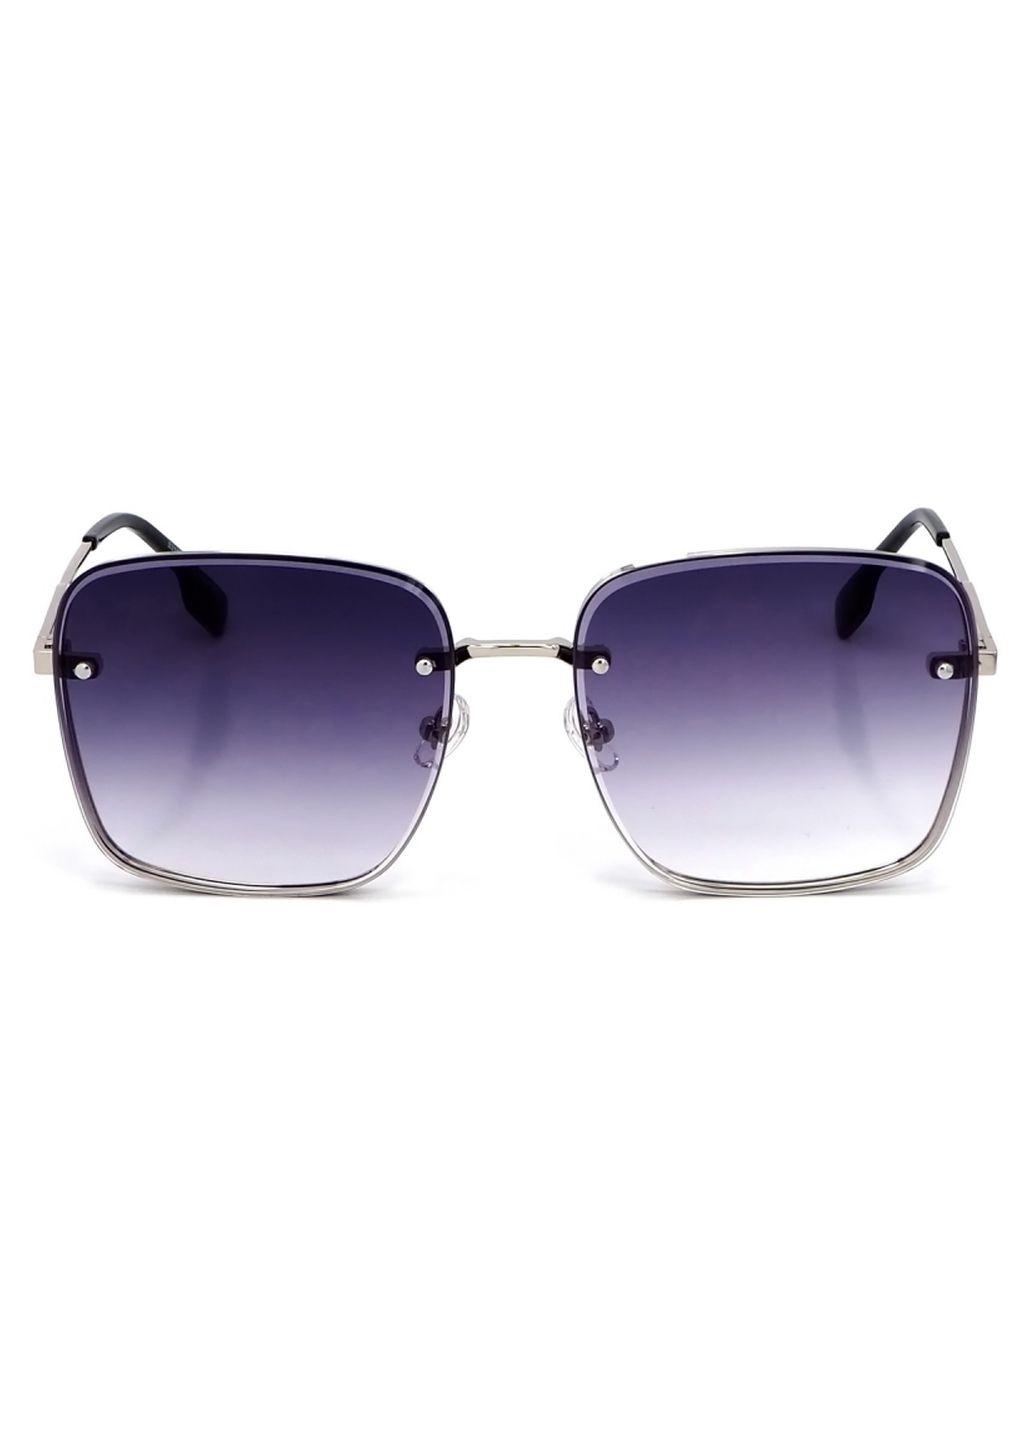 Купить Женские солнцезащитные очки Merlini с поляризацией S31844 117134 - Серебристый в интернет-магазине